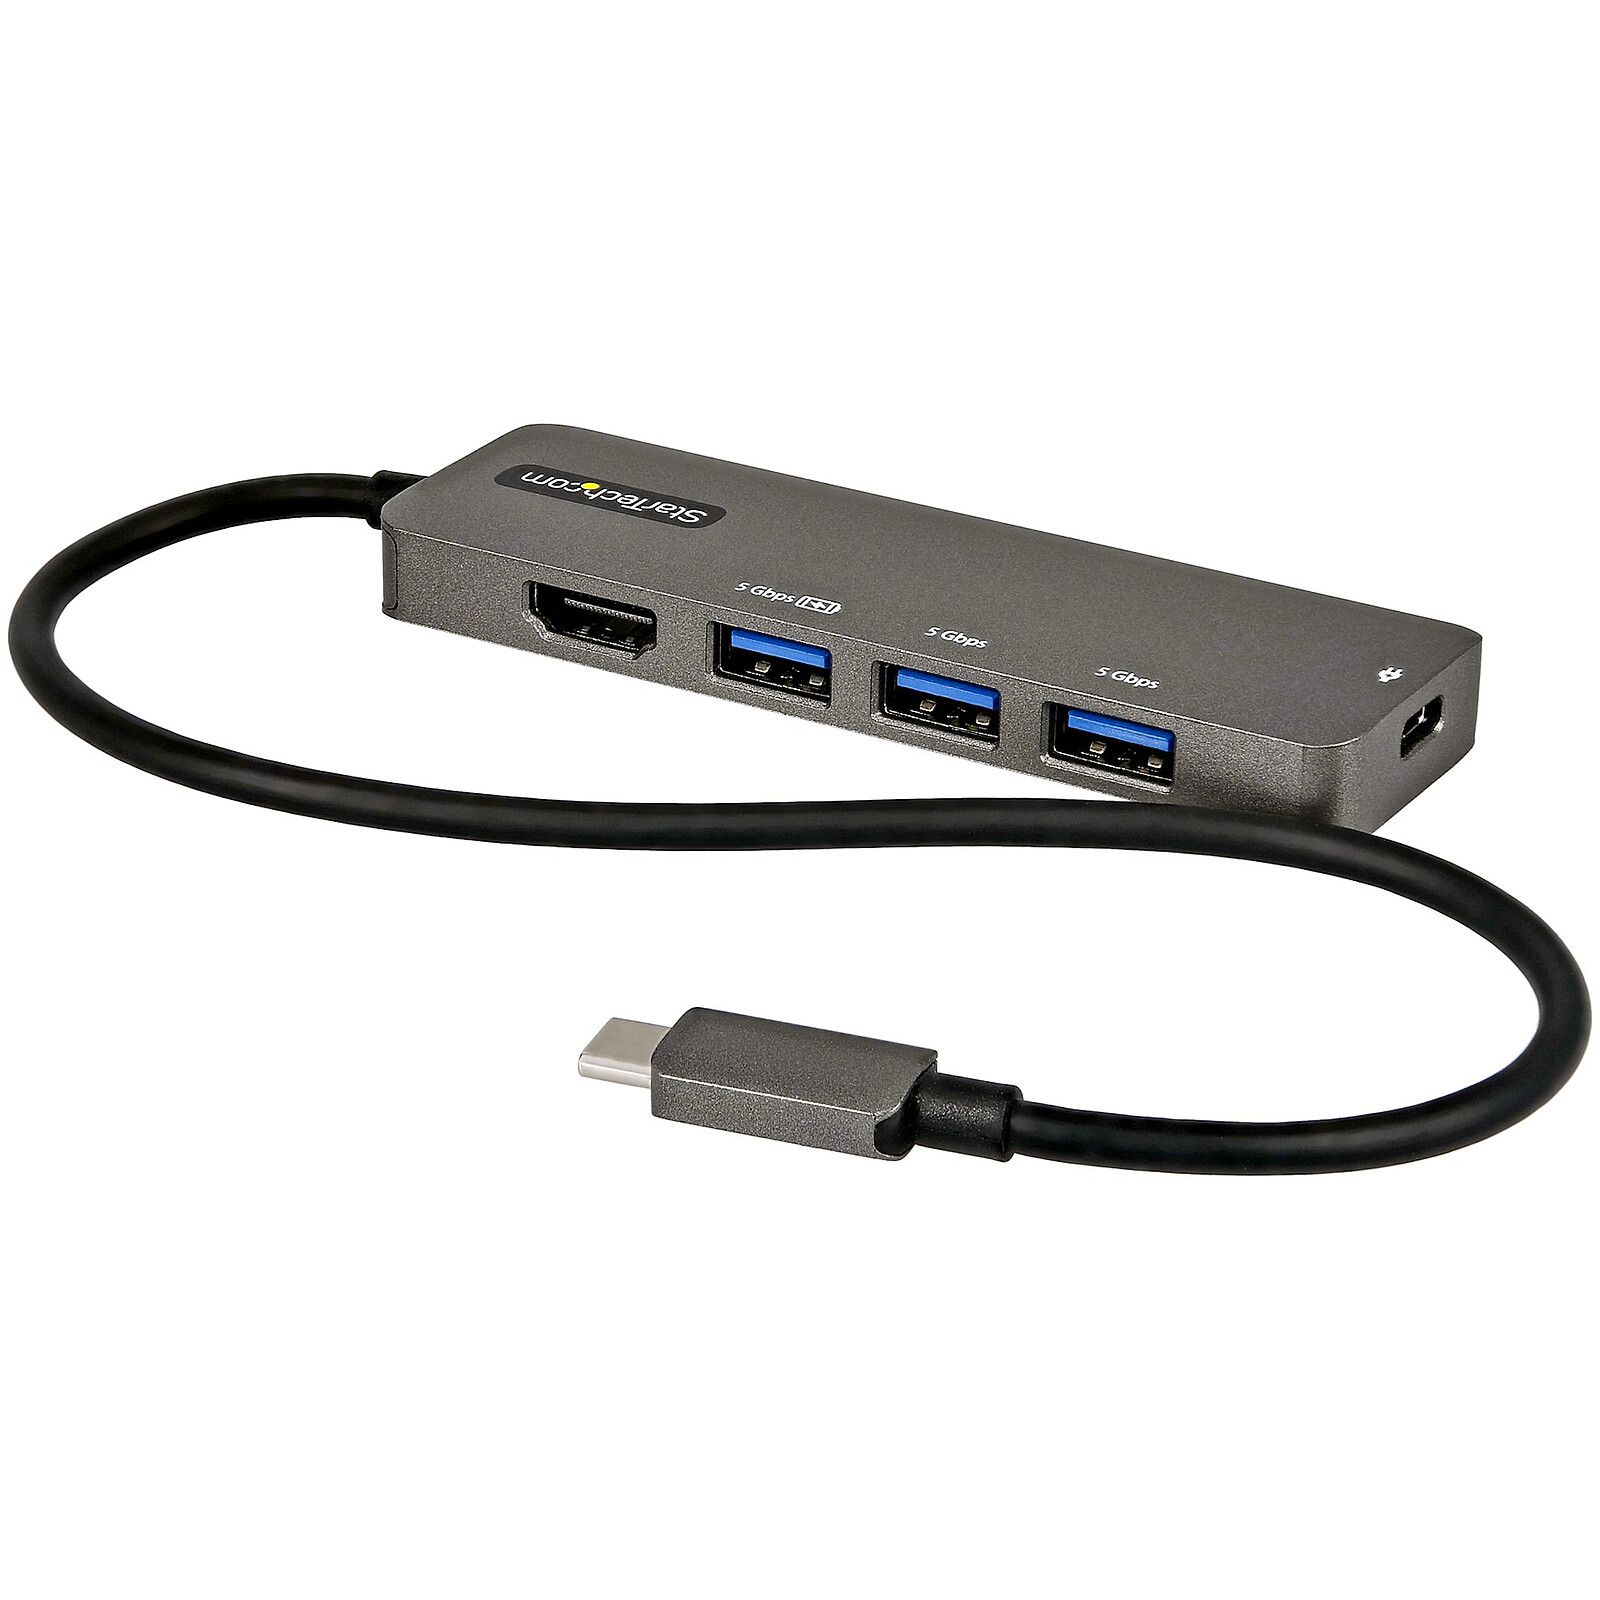 Pedir prestado Alabama financiero Adaptador multipuerto USB-C a HDMI 4K 60 Hz de StarTech.com, Hub USB 3.0 de  4 puertos y Power Delivery de 100W - Hub USB StarTech.com en LDLC